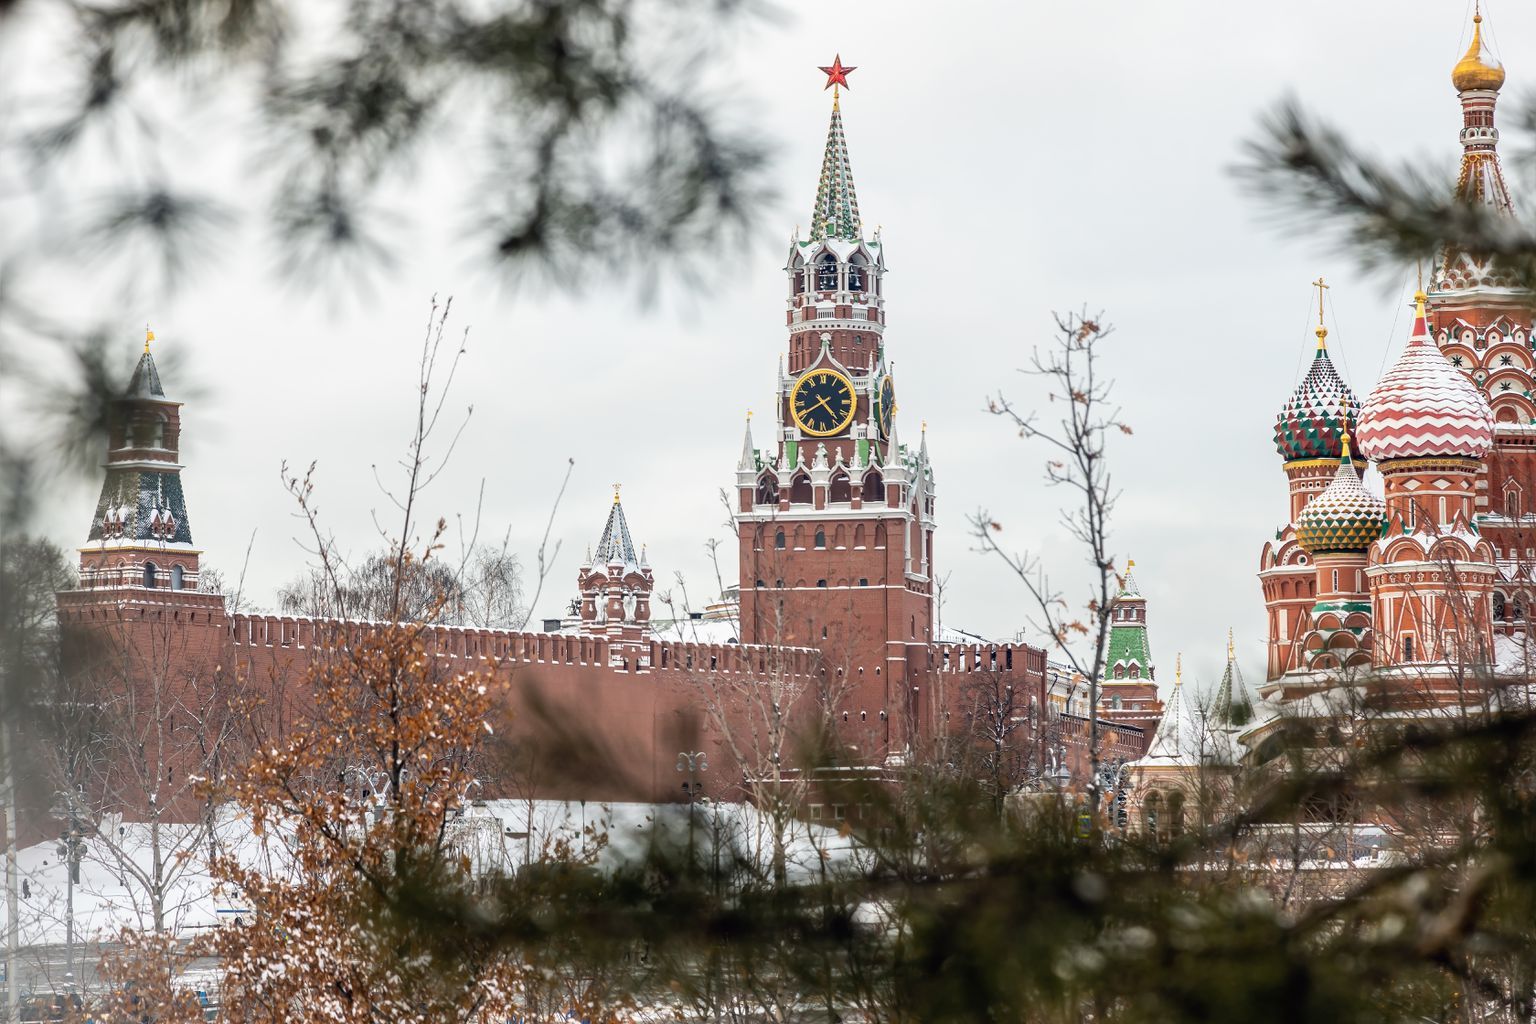 Кремль. Иллюстративное фотоФото: OlegDoroshin/Shutterstock